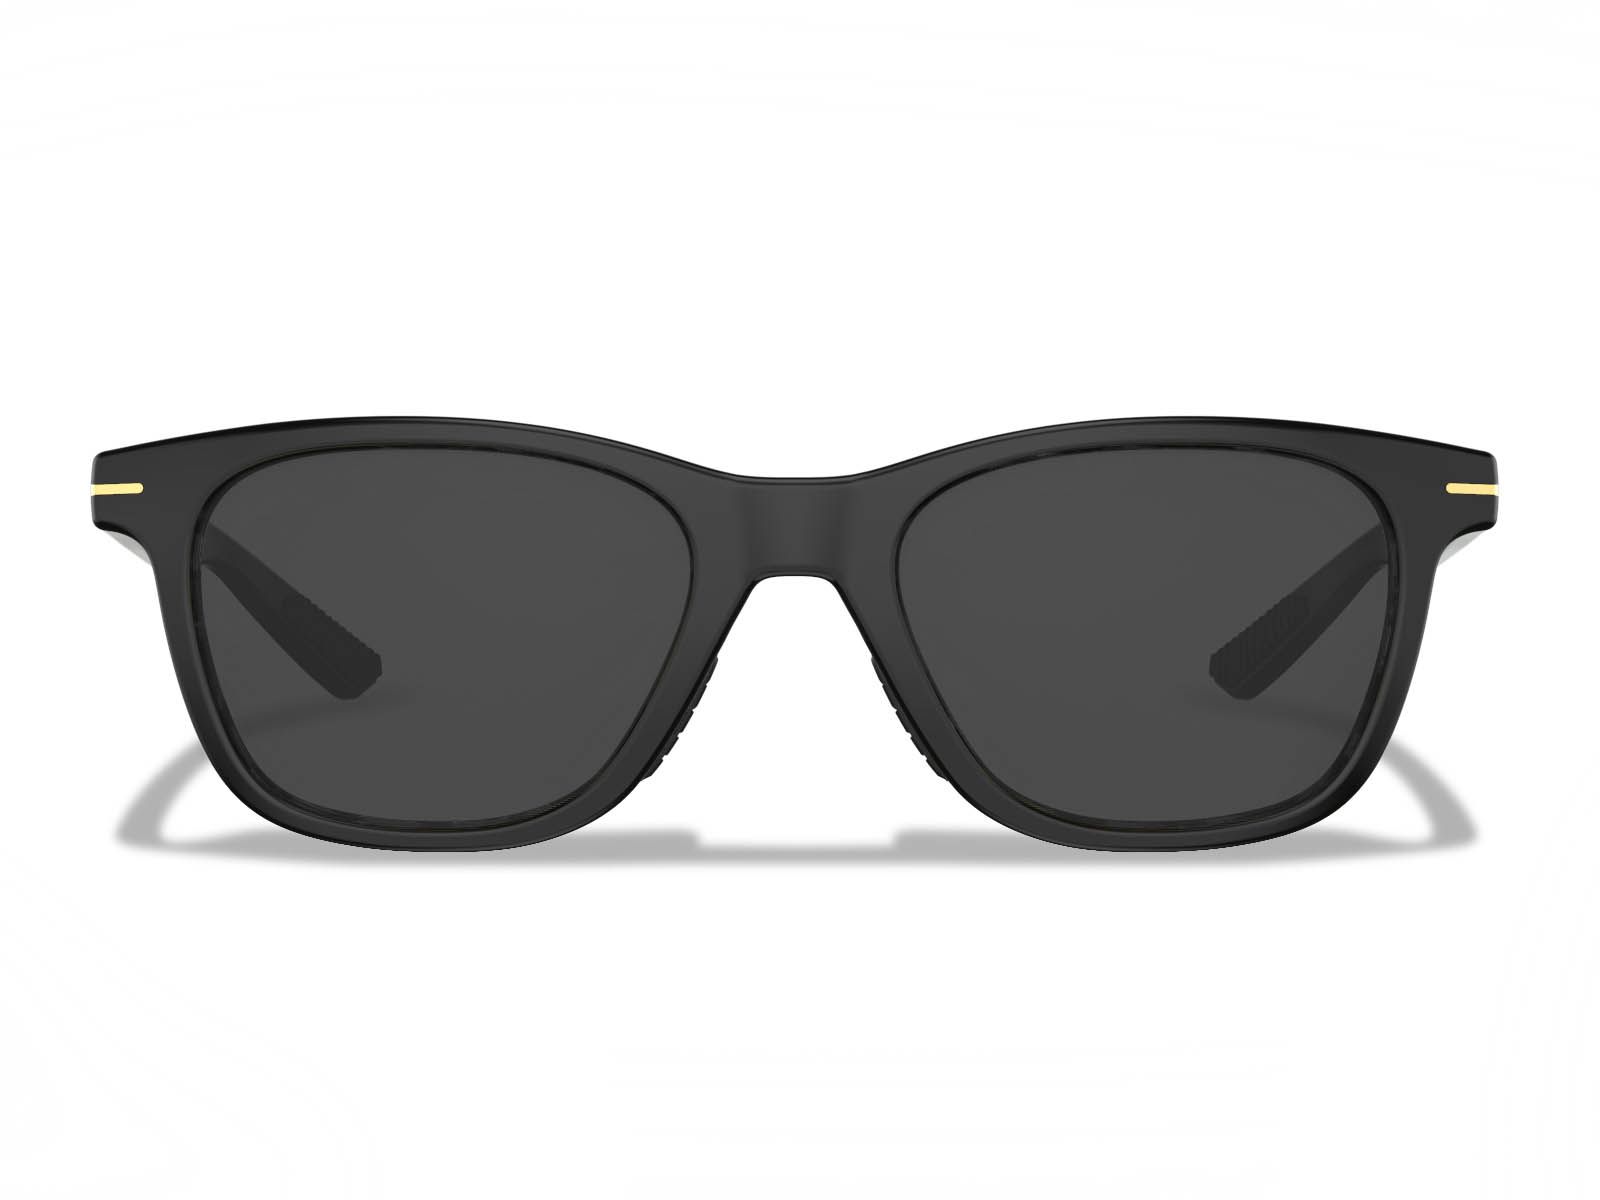 Zilker Prescription Sunglasses | Lightweight Modern Rectangular ...